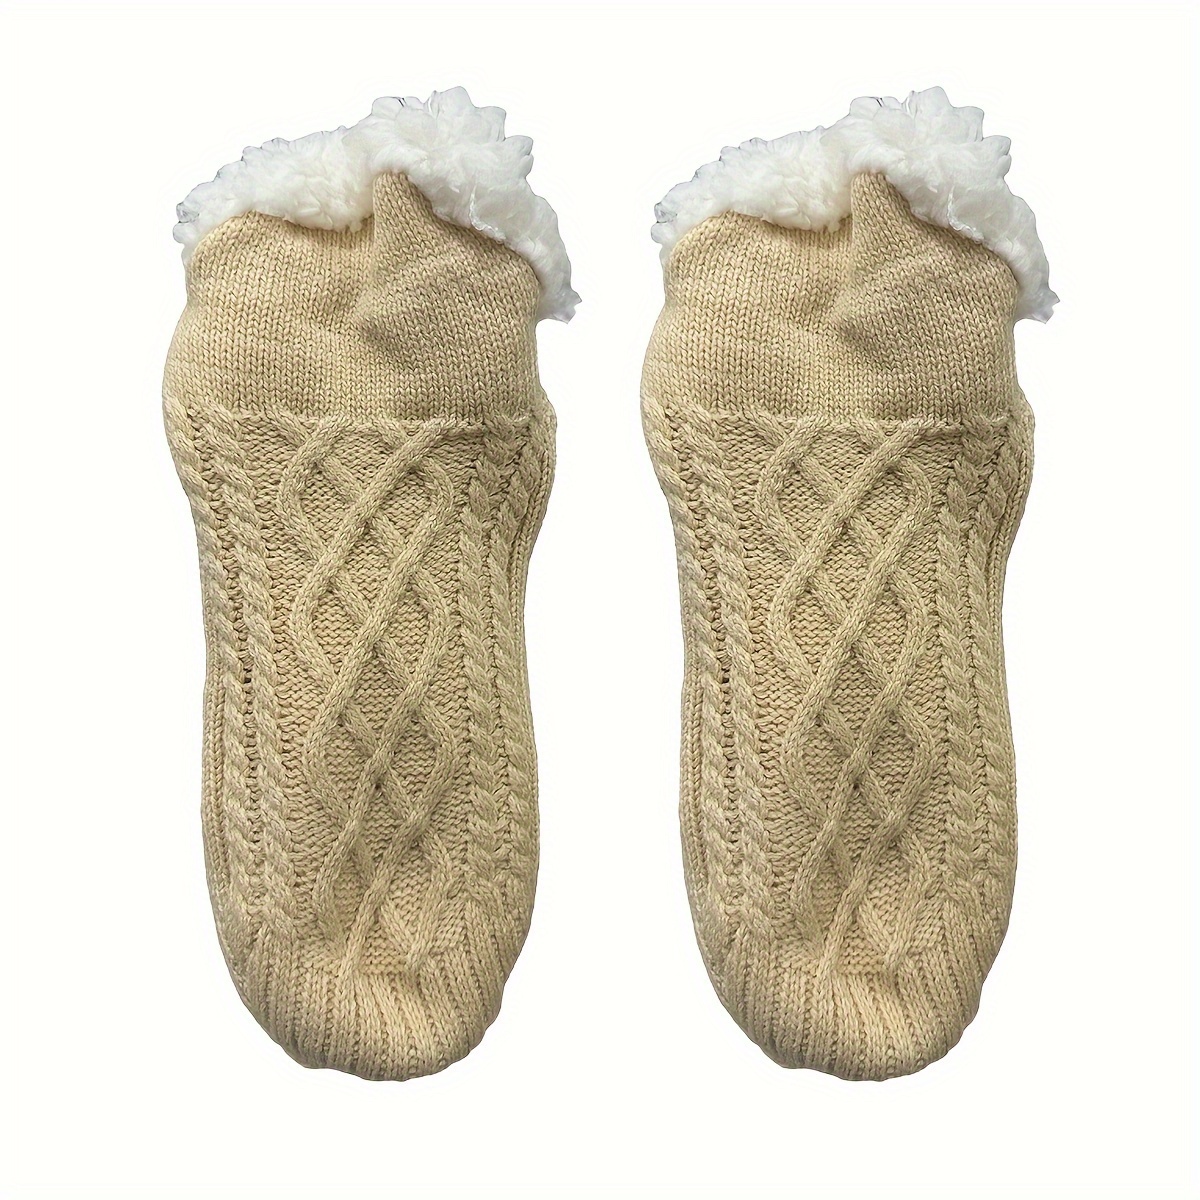 2-PAIR Cozy Fuzzy Socks Women Non Slip Socks Slipper Socks Fluffy